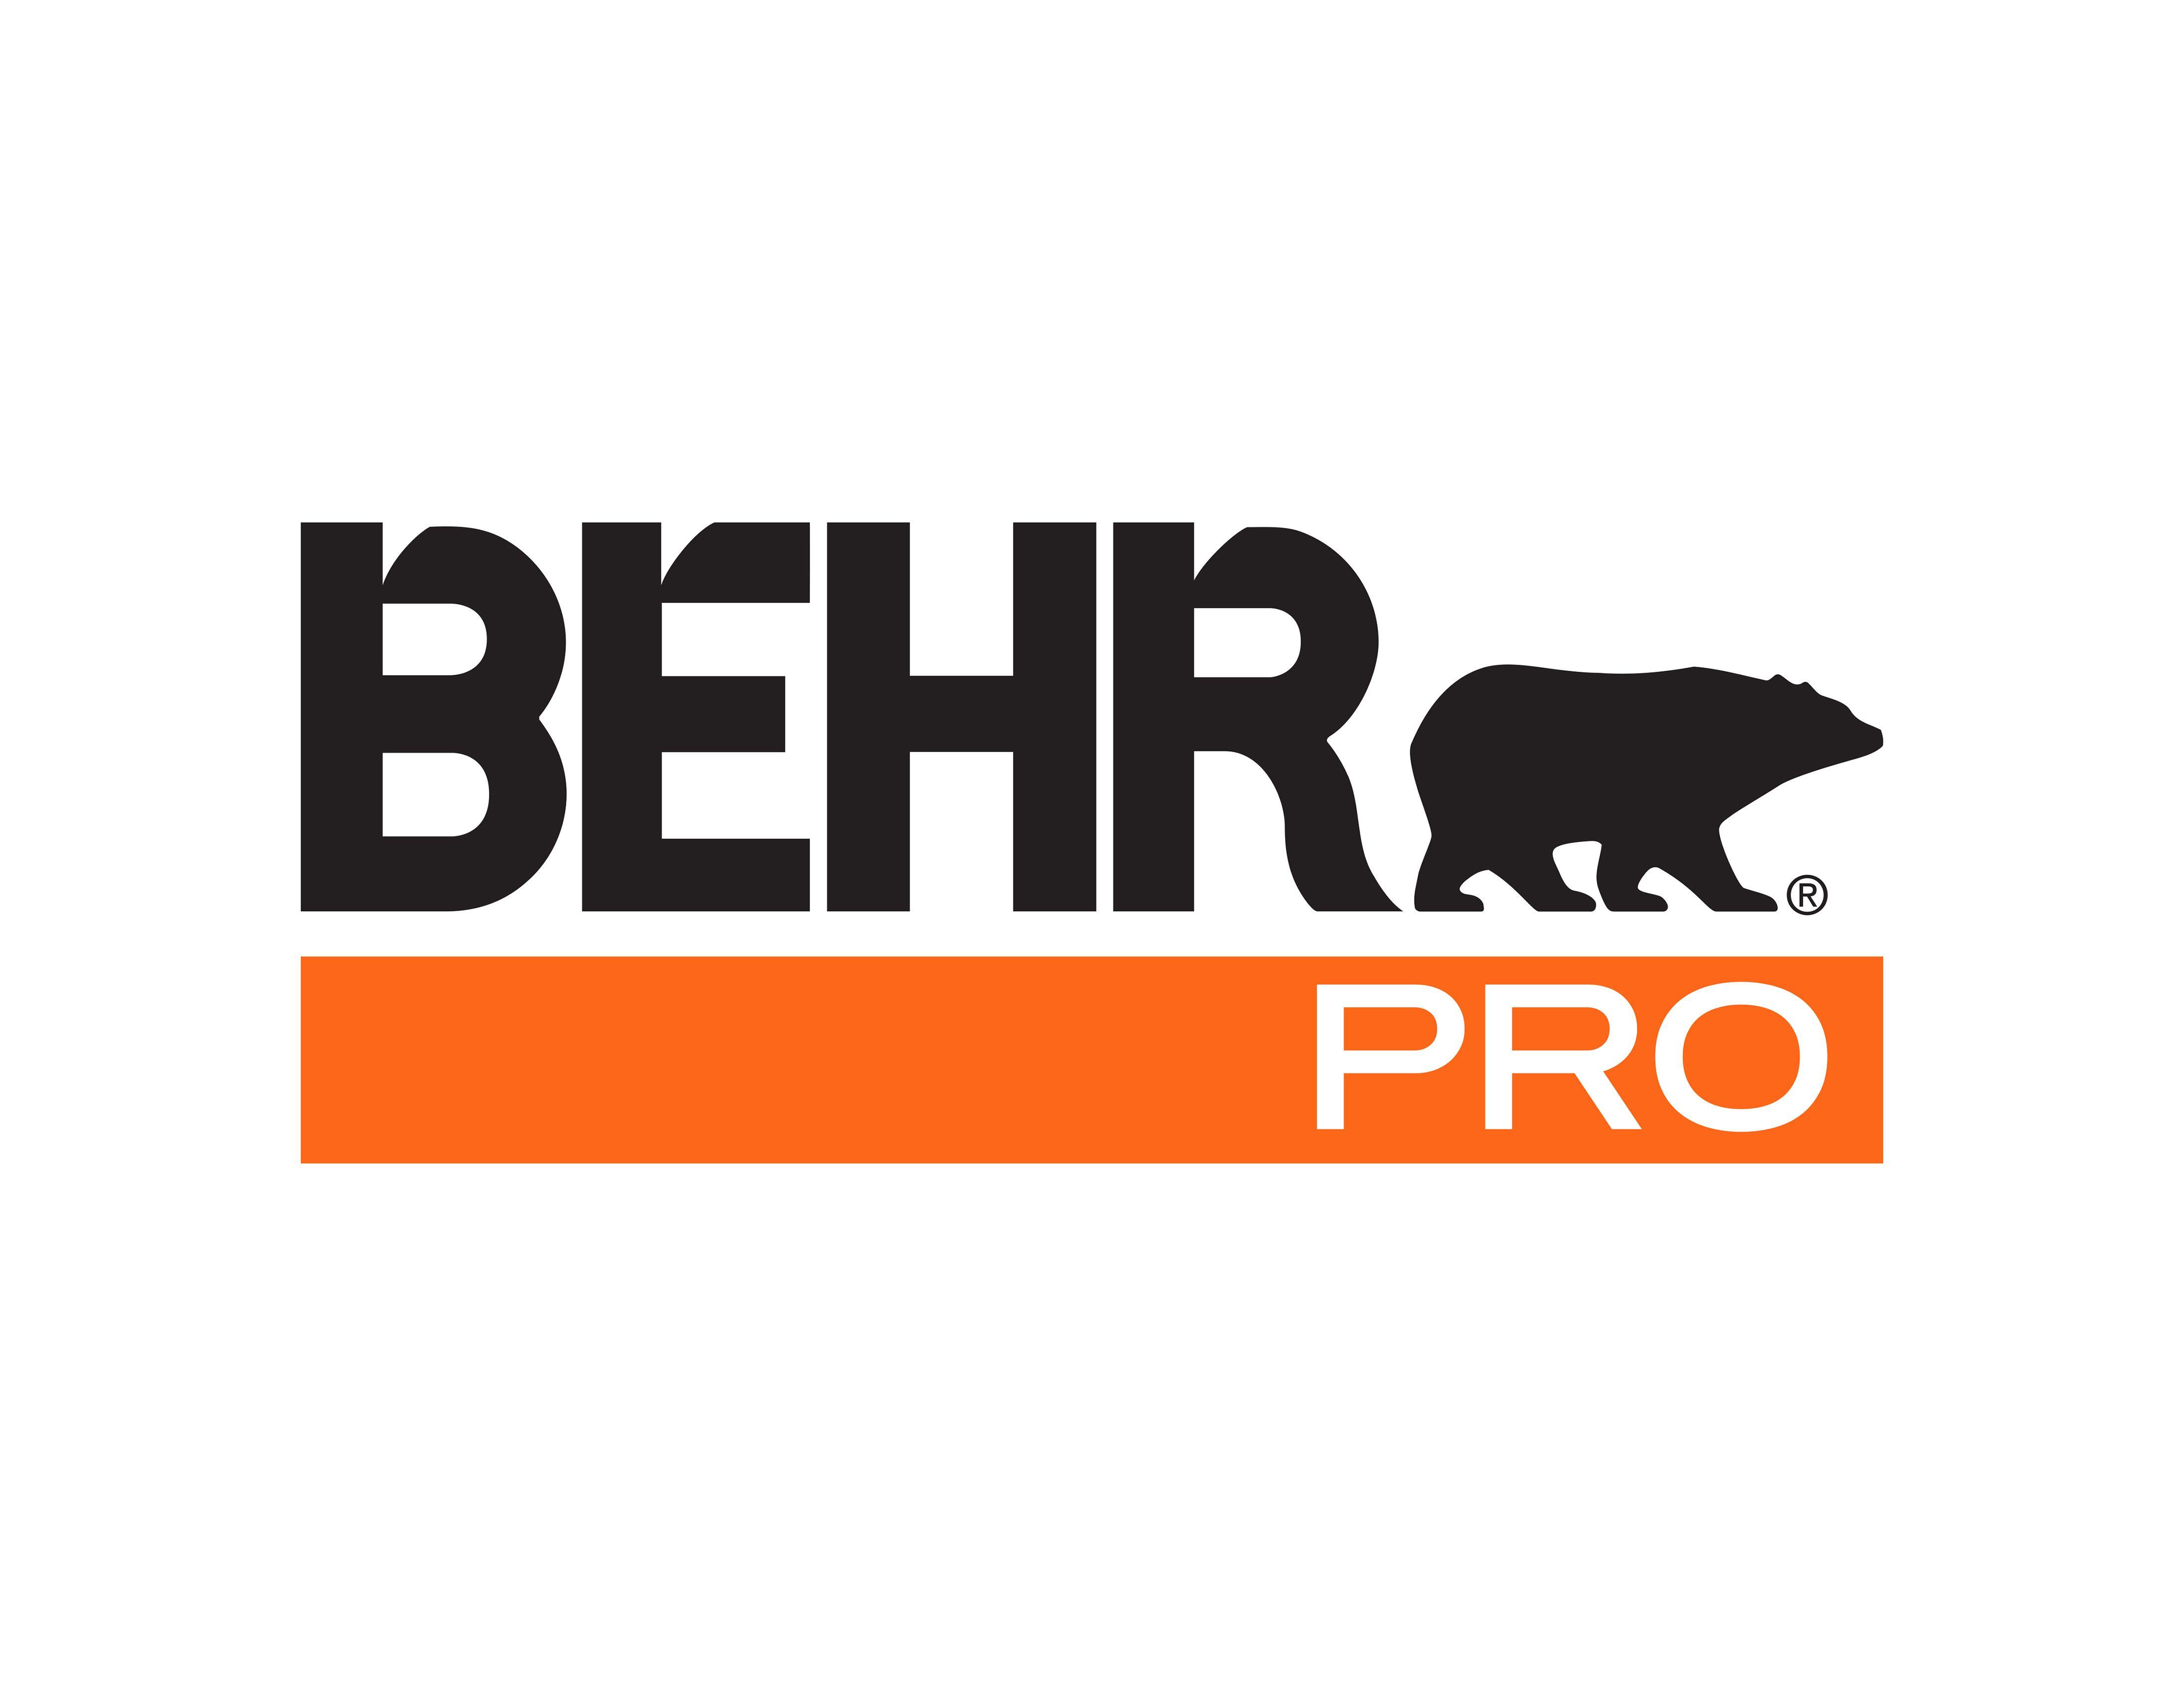 Behr Logo - October 18 BEHR Plant Tour